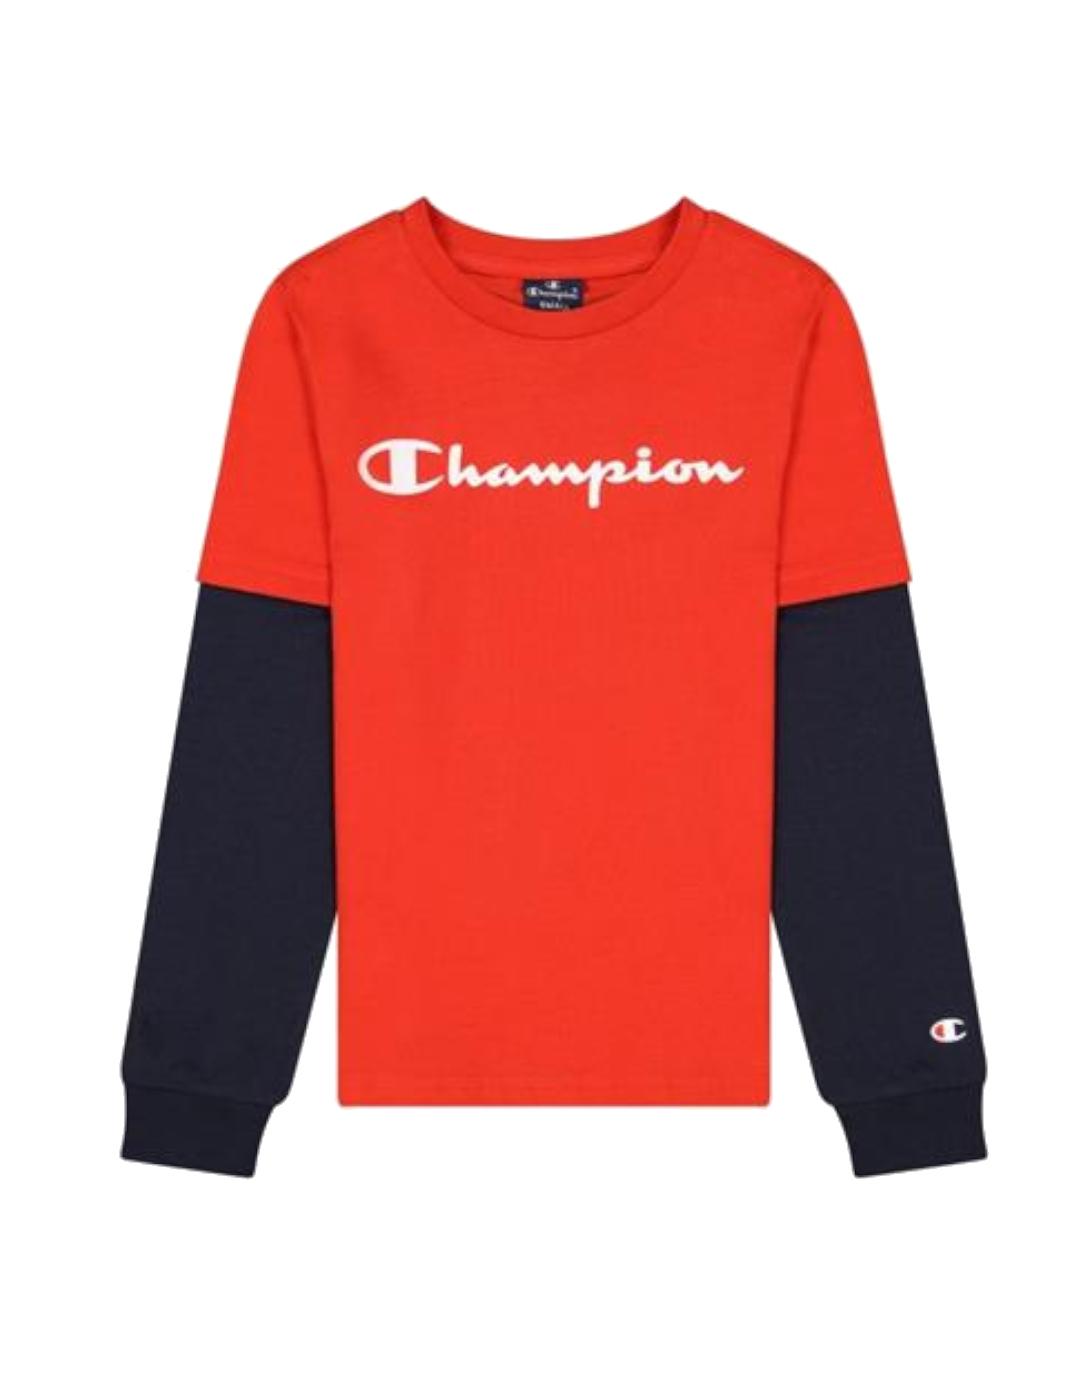 Champion - Champion Camiseta Manga Larga Niño Rojo y Azul